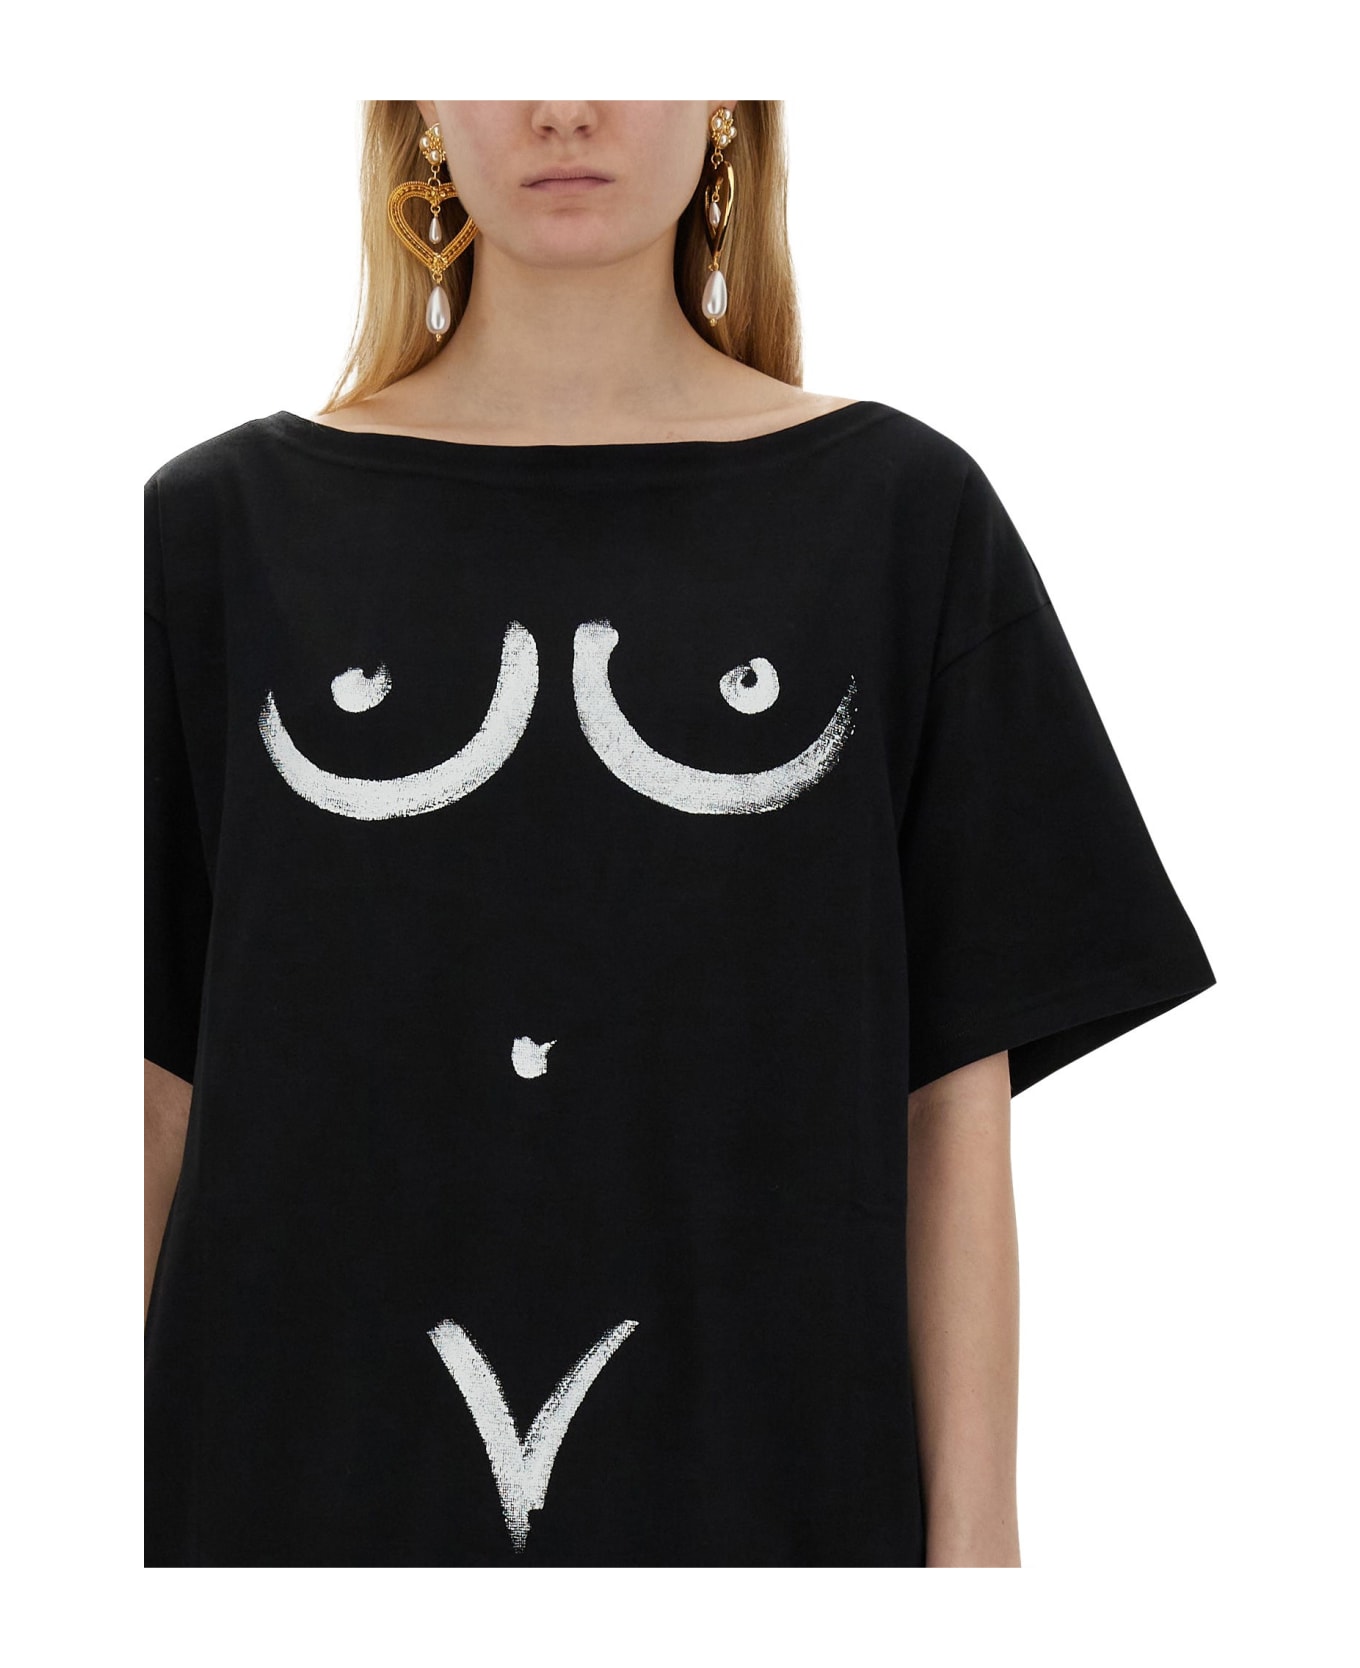 Moschino Interlock Body Print T-shirt - Black